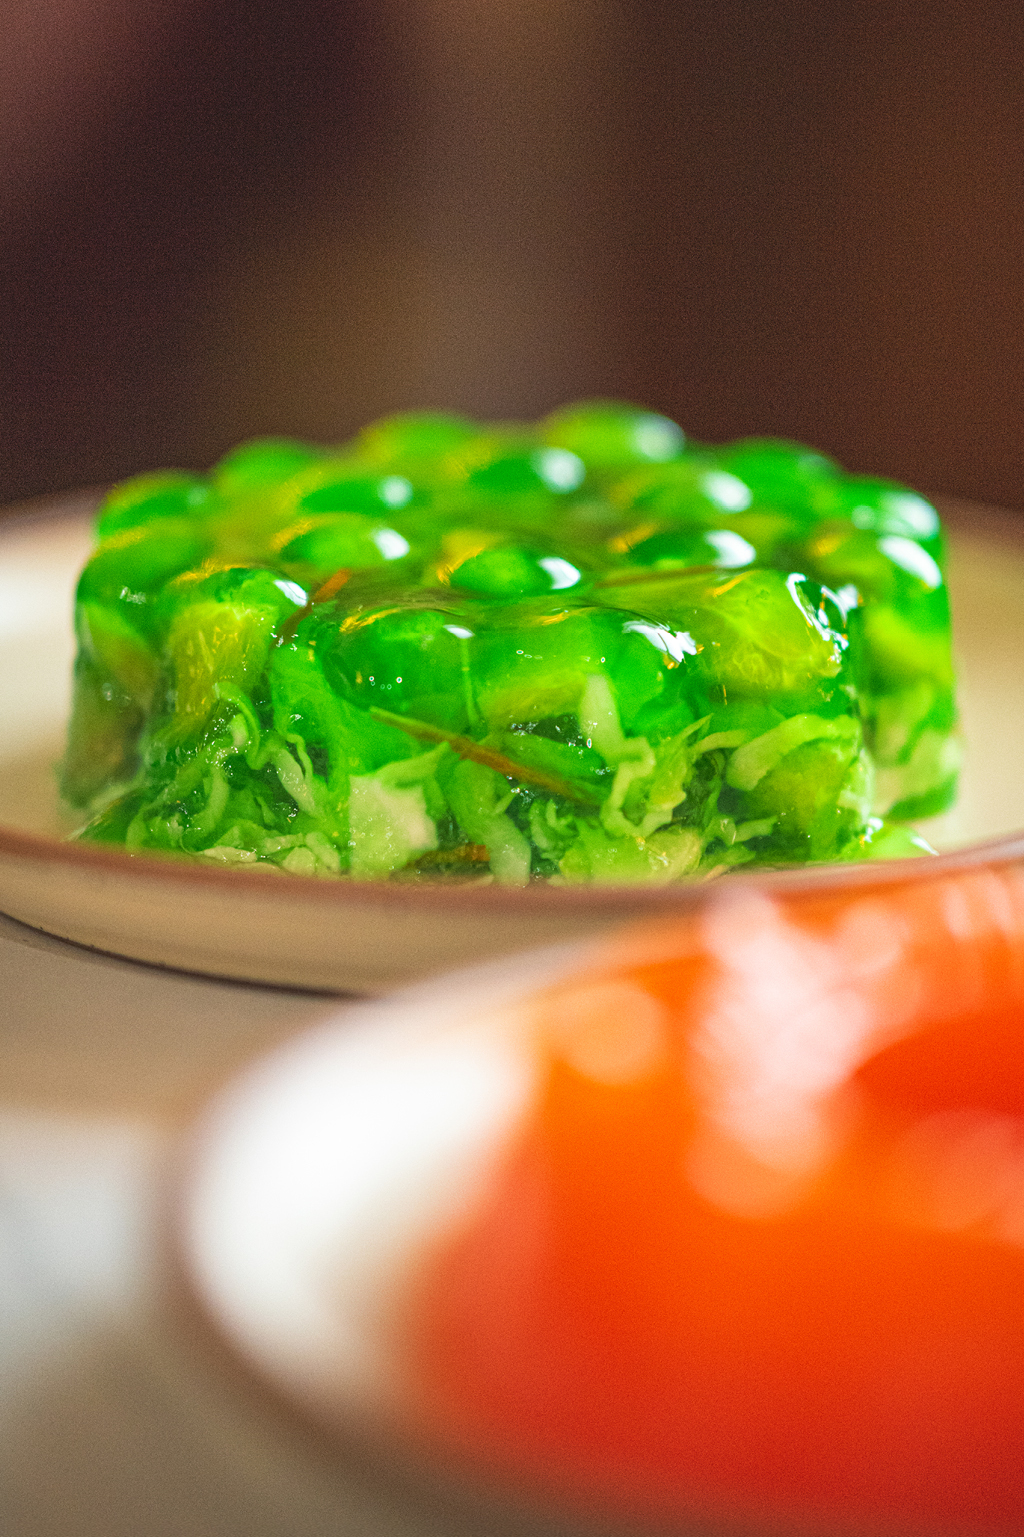 Green jello